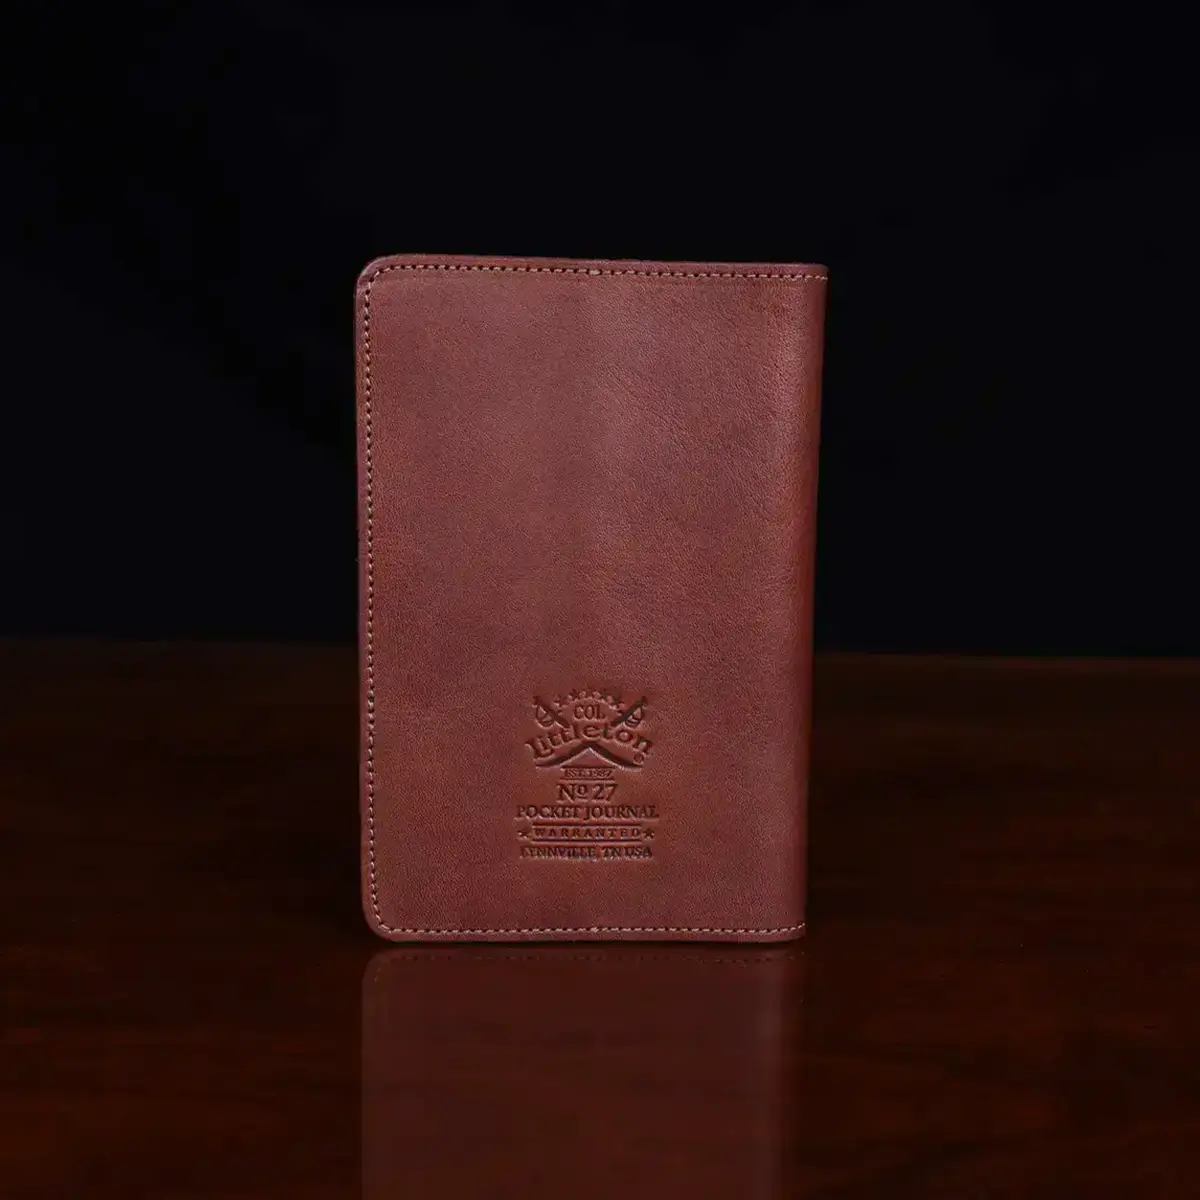 no 27 pocket journal showing the back side